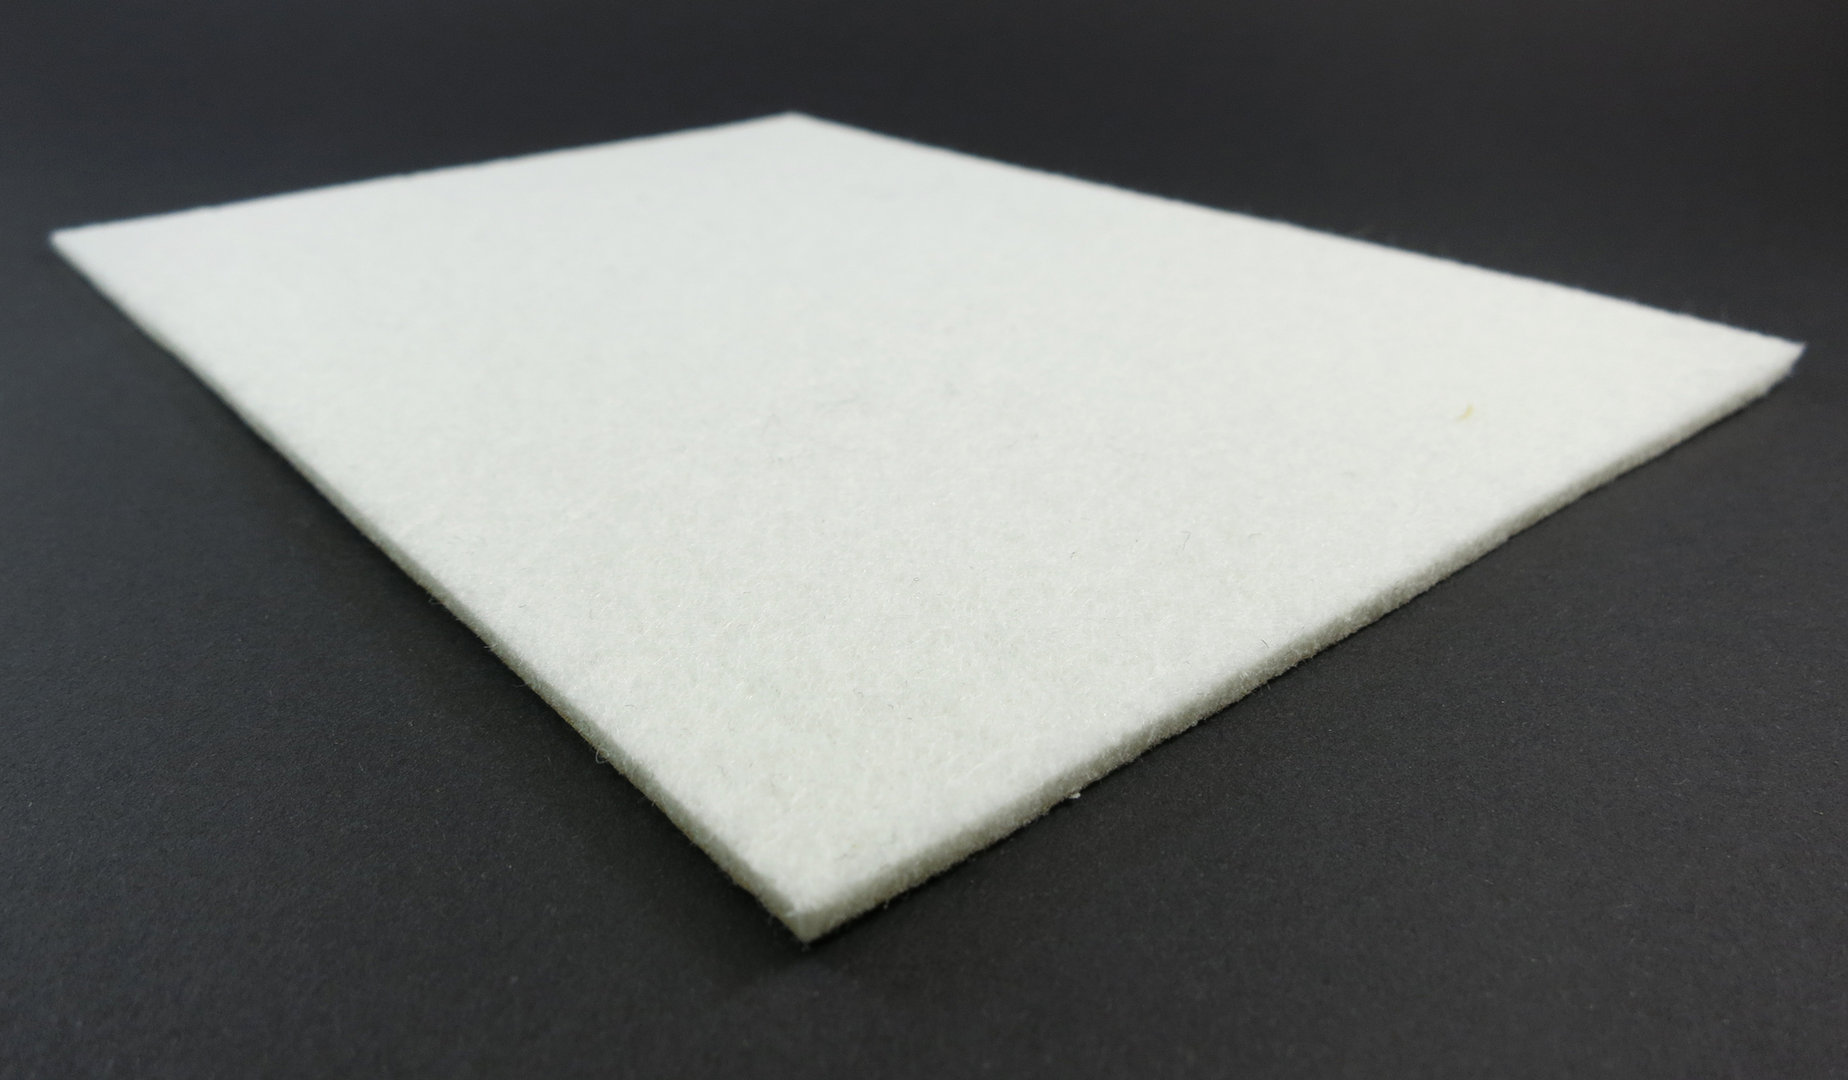 Filzplatte quadratisch ab 5x5cm, 3mm dick | selbstklebend | schwarz, anthrazit, braun, weiß